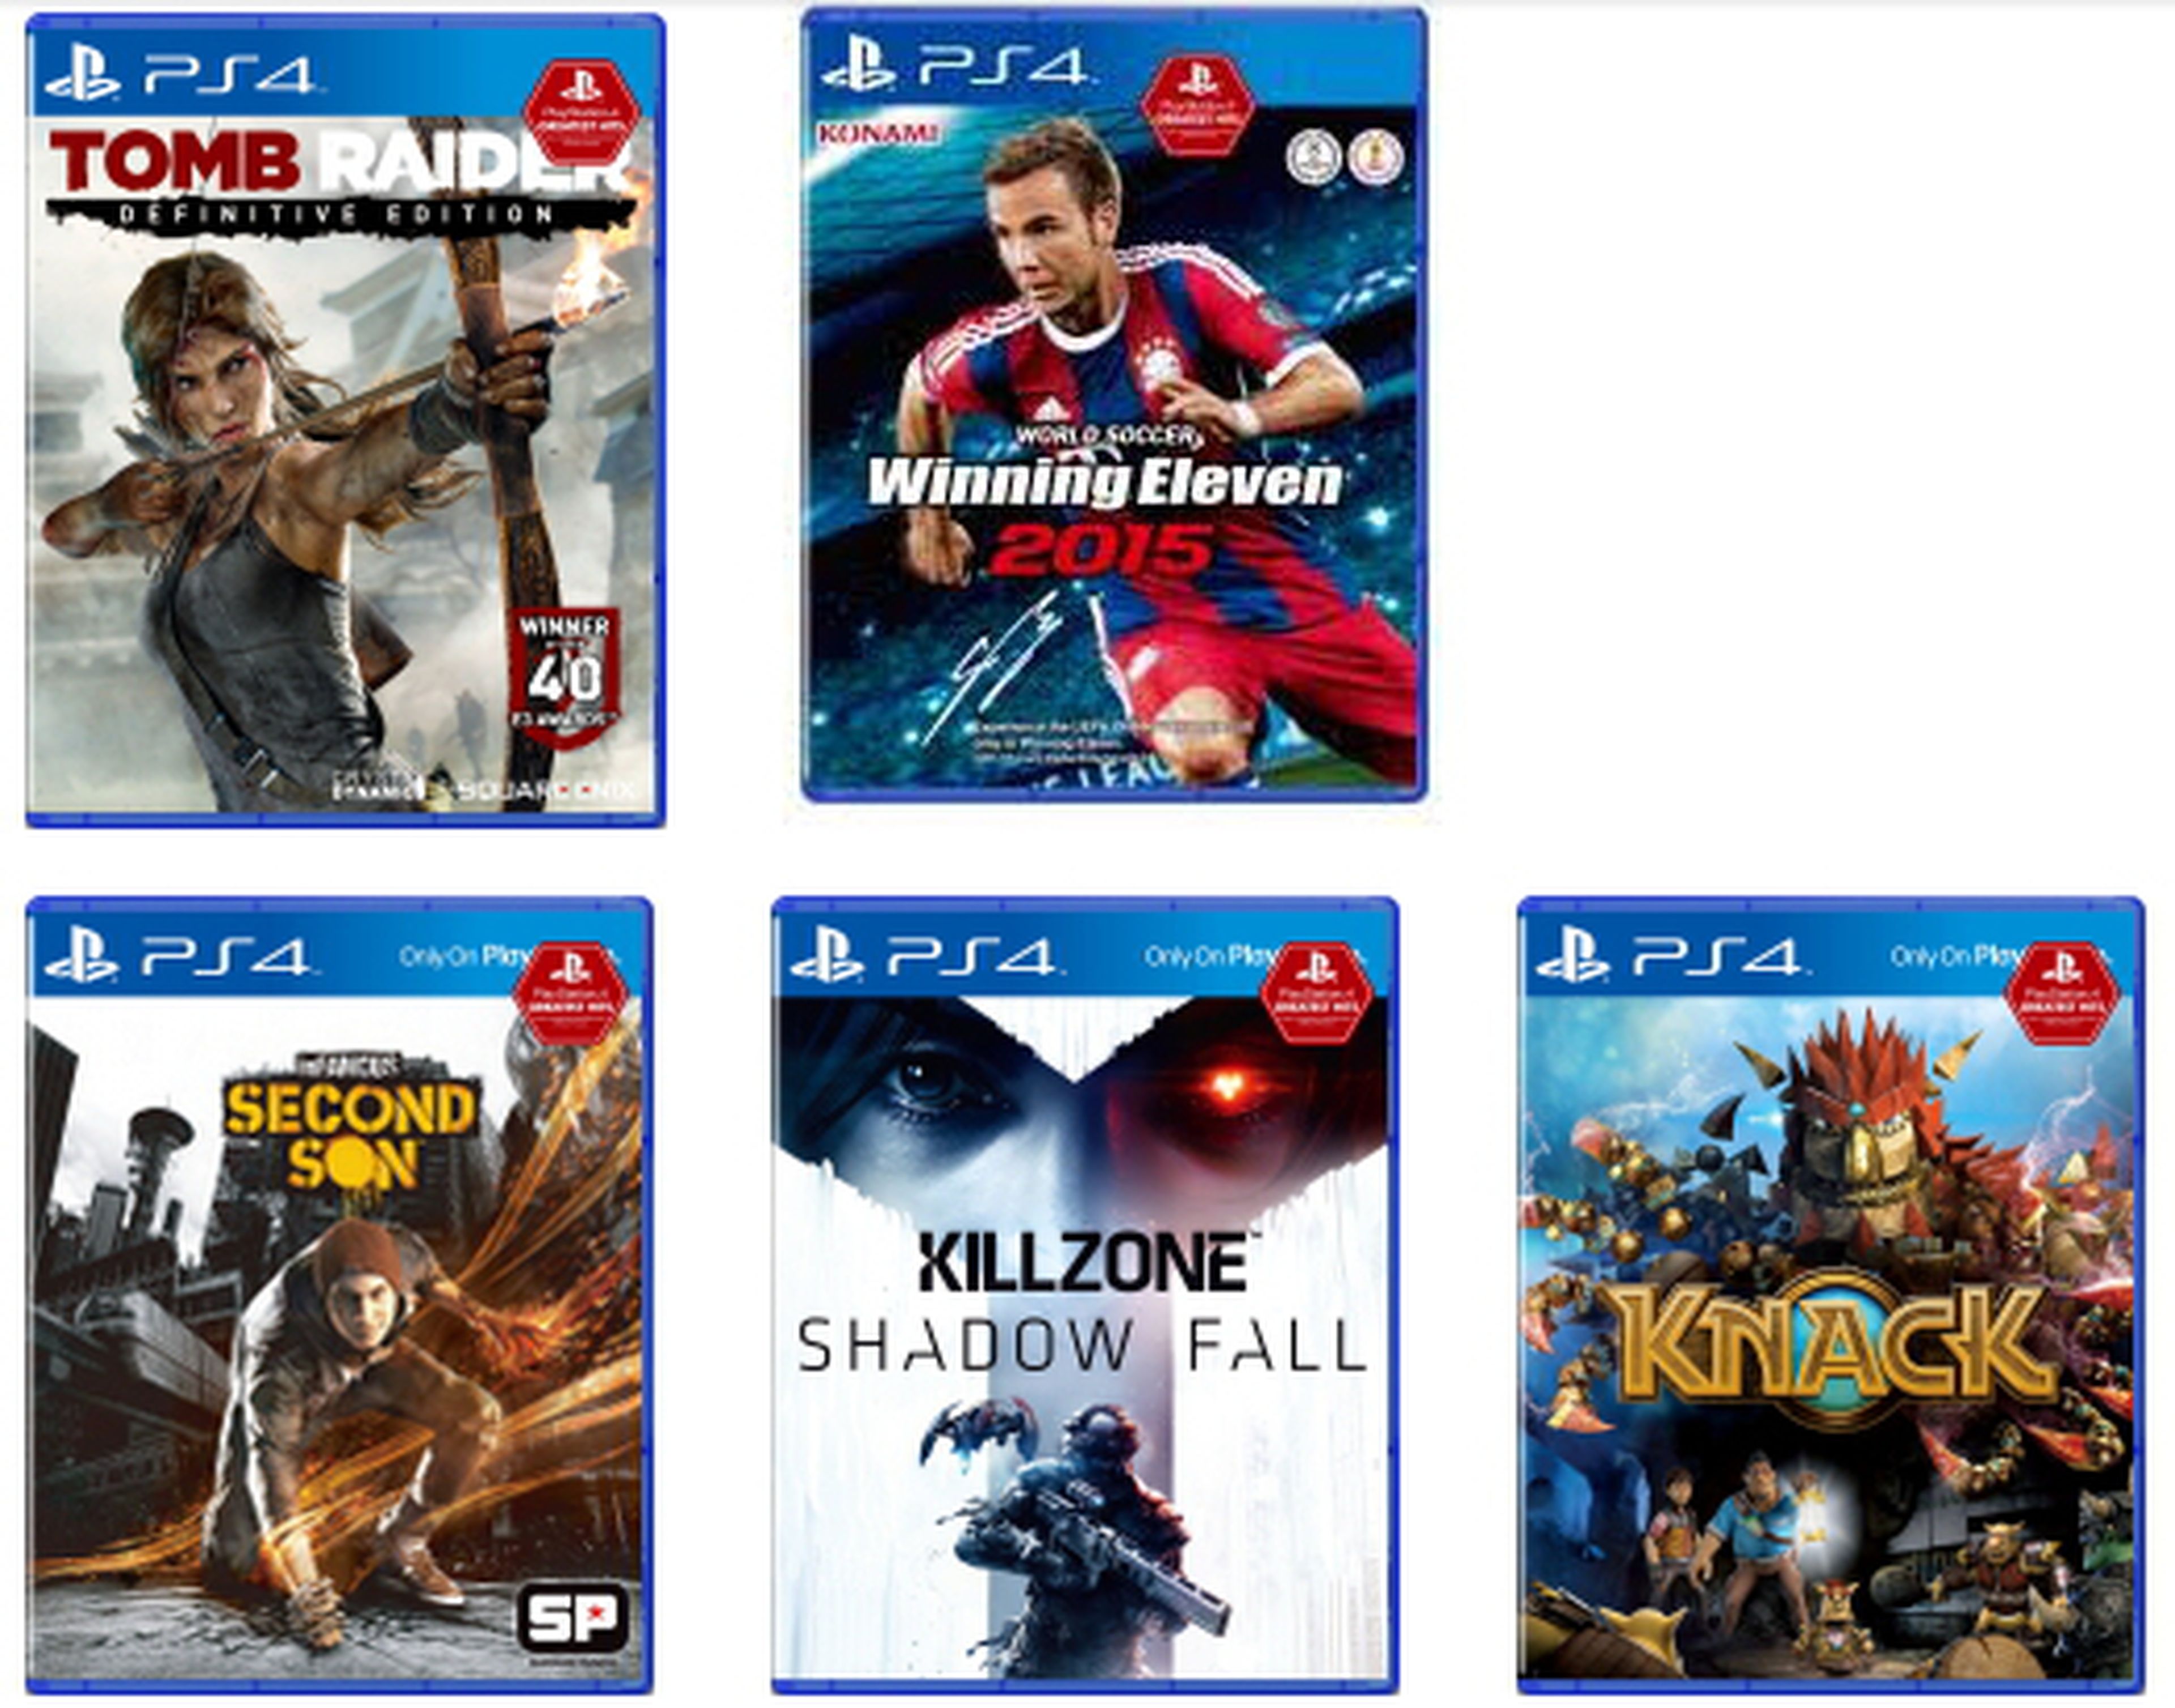 PS4 presenta su línea de juegos Greatest Hits